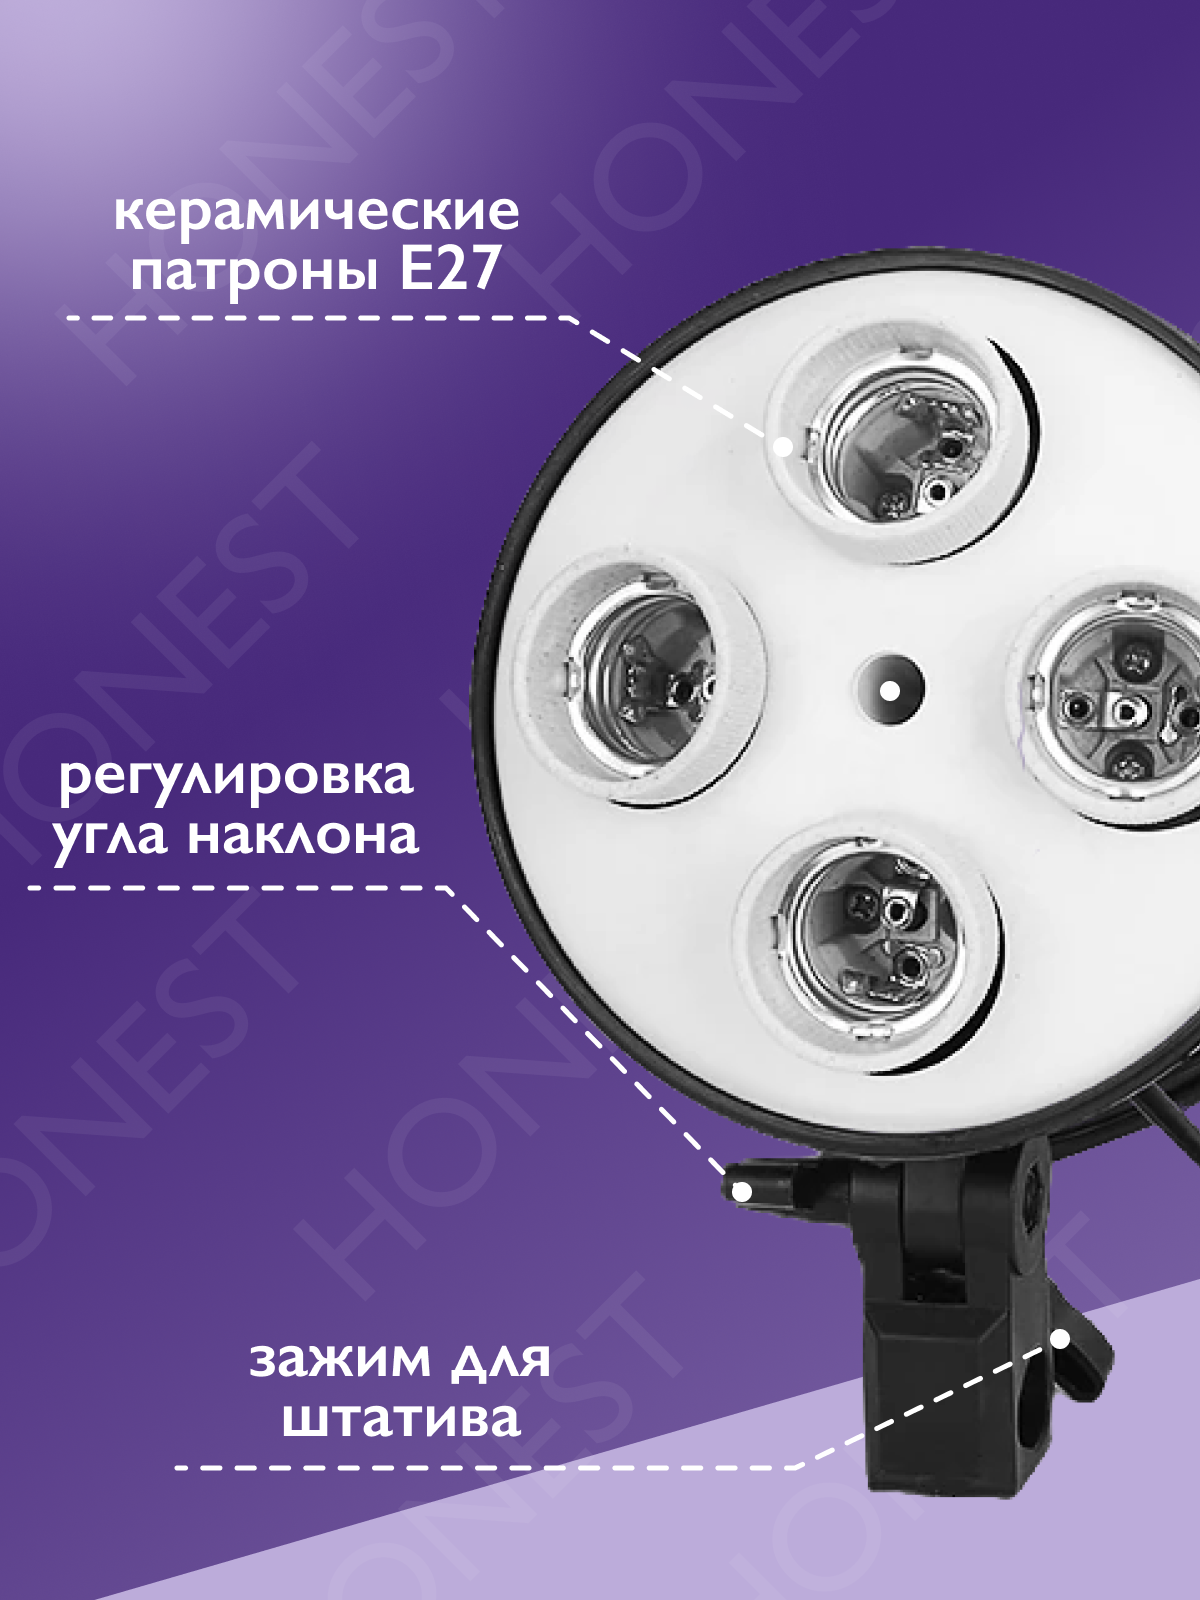 Софтбокс HONEST 1шт на 4 LED лампы 24w и 2 режима работы студийного света